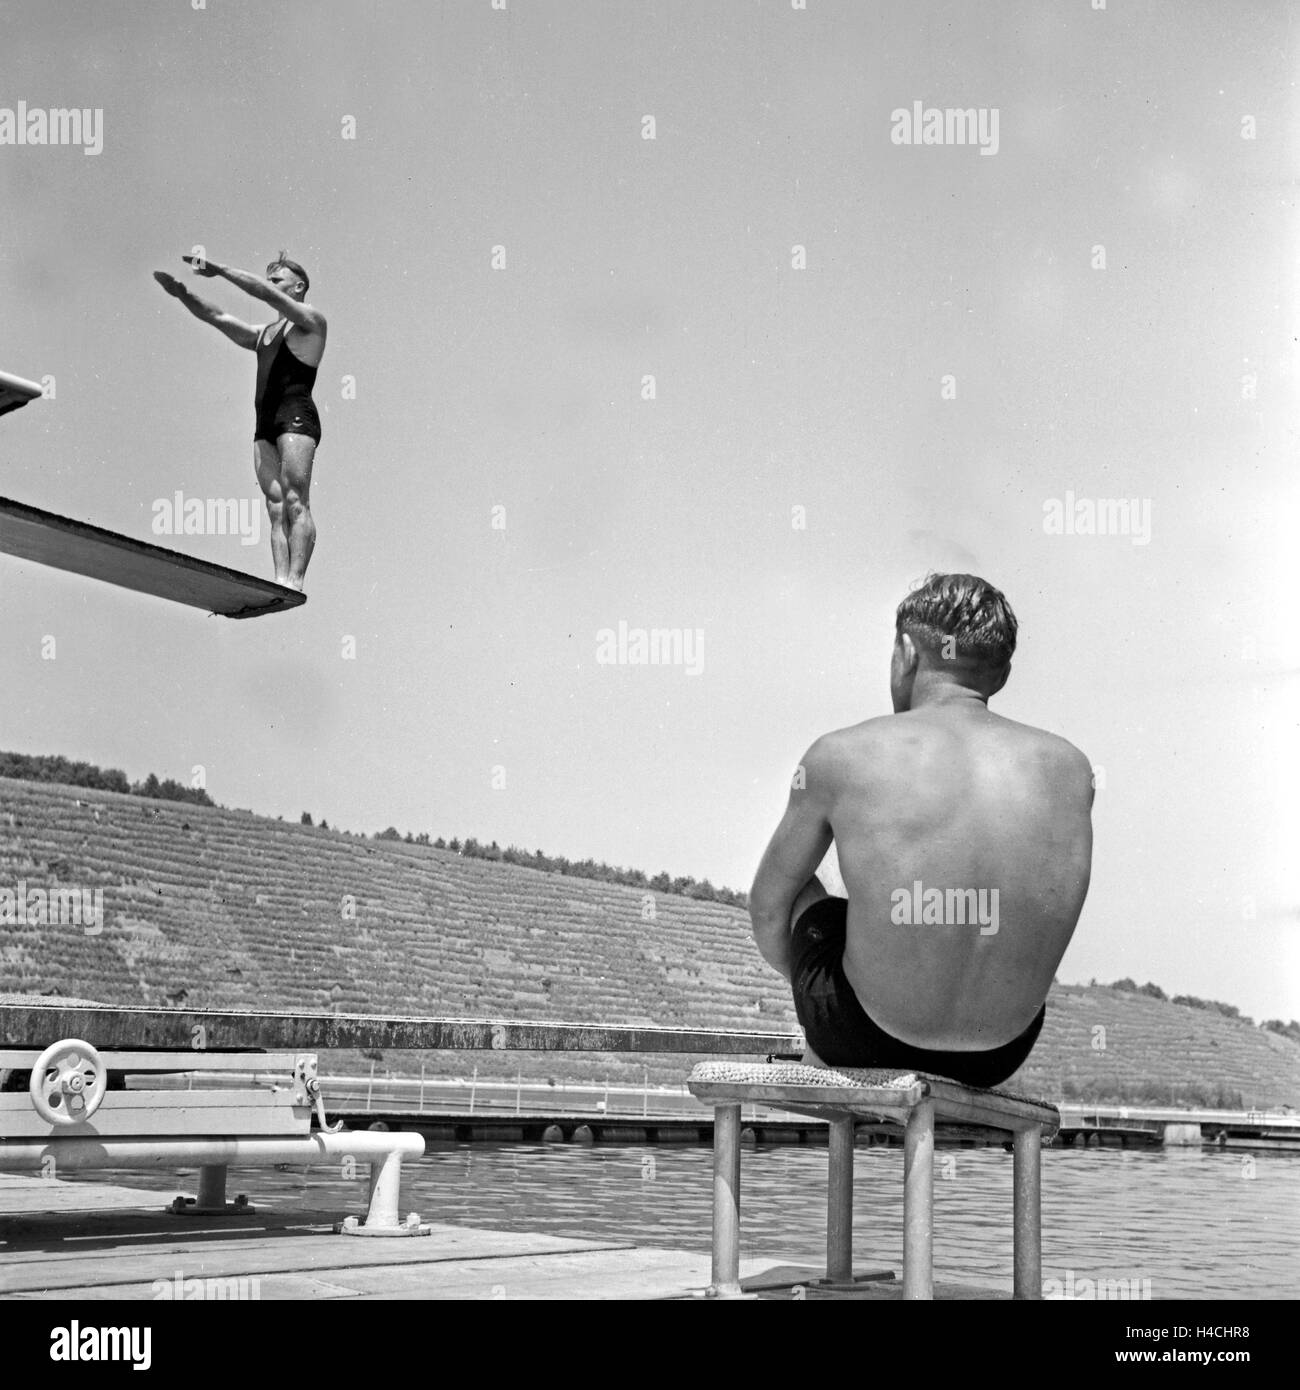 Ein Mann bereitet sich auf seinem Sprung vom Sprungbrett ins Wasser vor, Deutschland 1930er Jahre. A high diver preparing before he jumps, Germany 1930s. Stock Photo